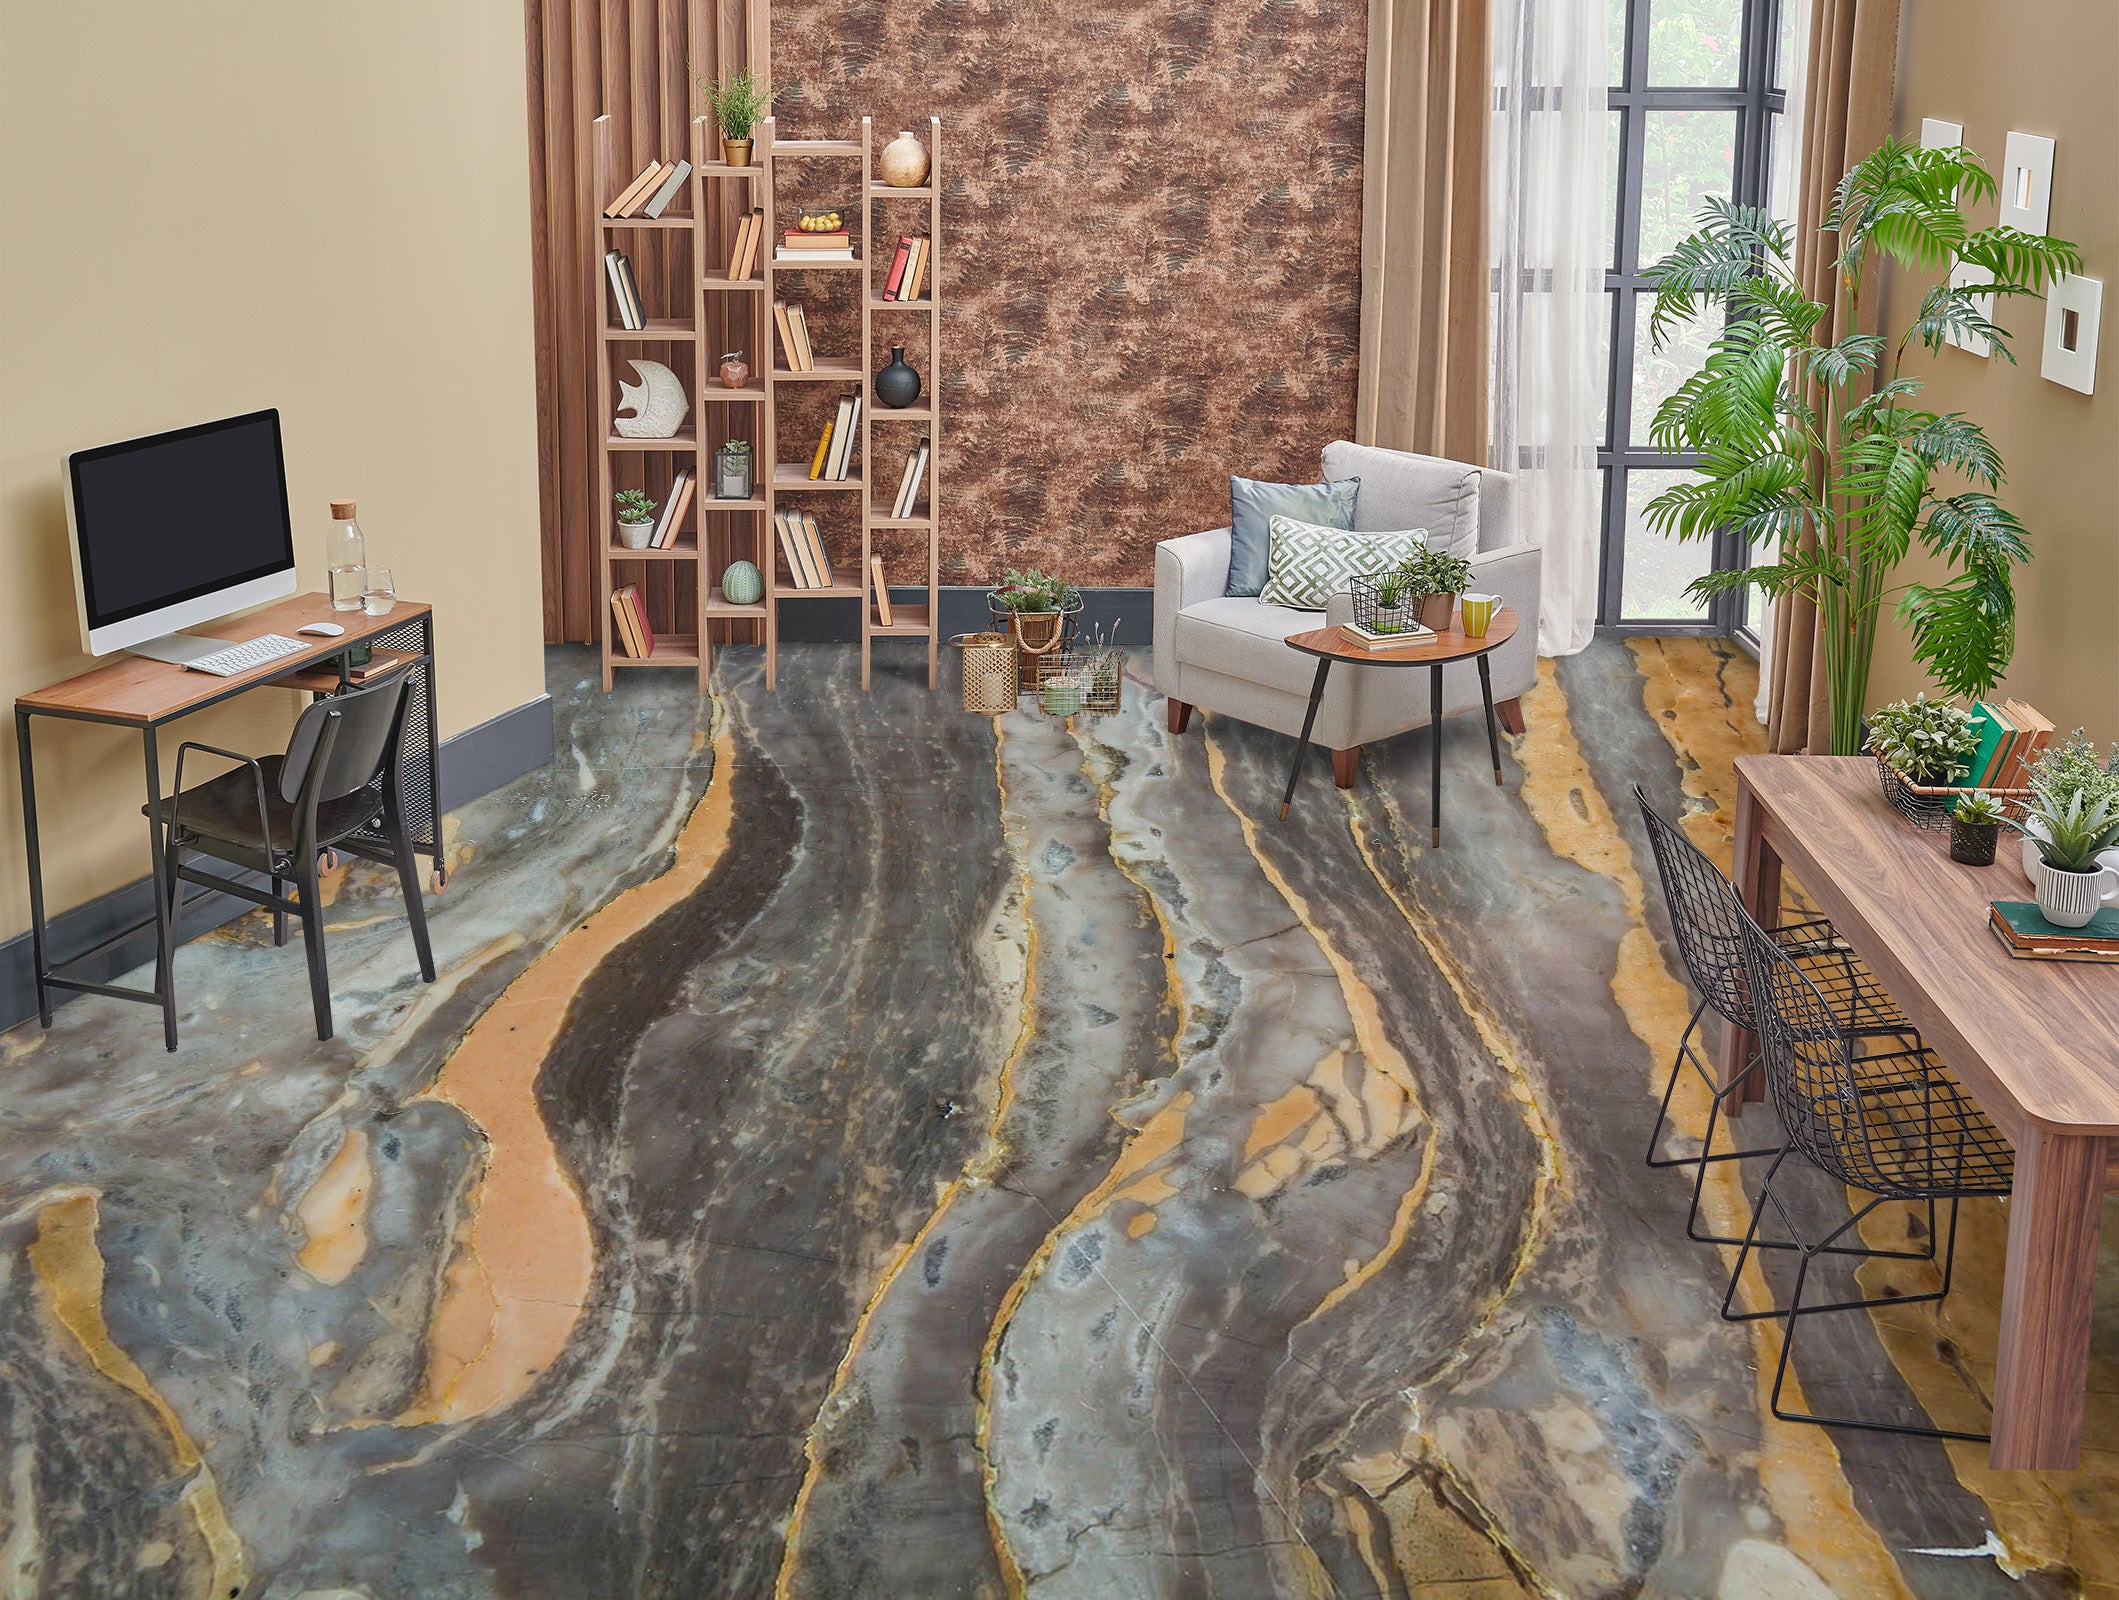 3D Geological Texture 919 Floor Mural  Wallpaper Murals Rug & Mat Print Epoxy waterproof bath floor